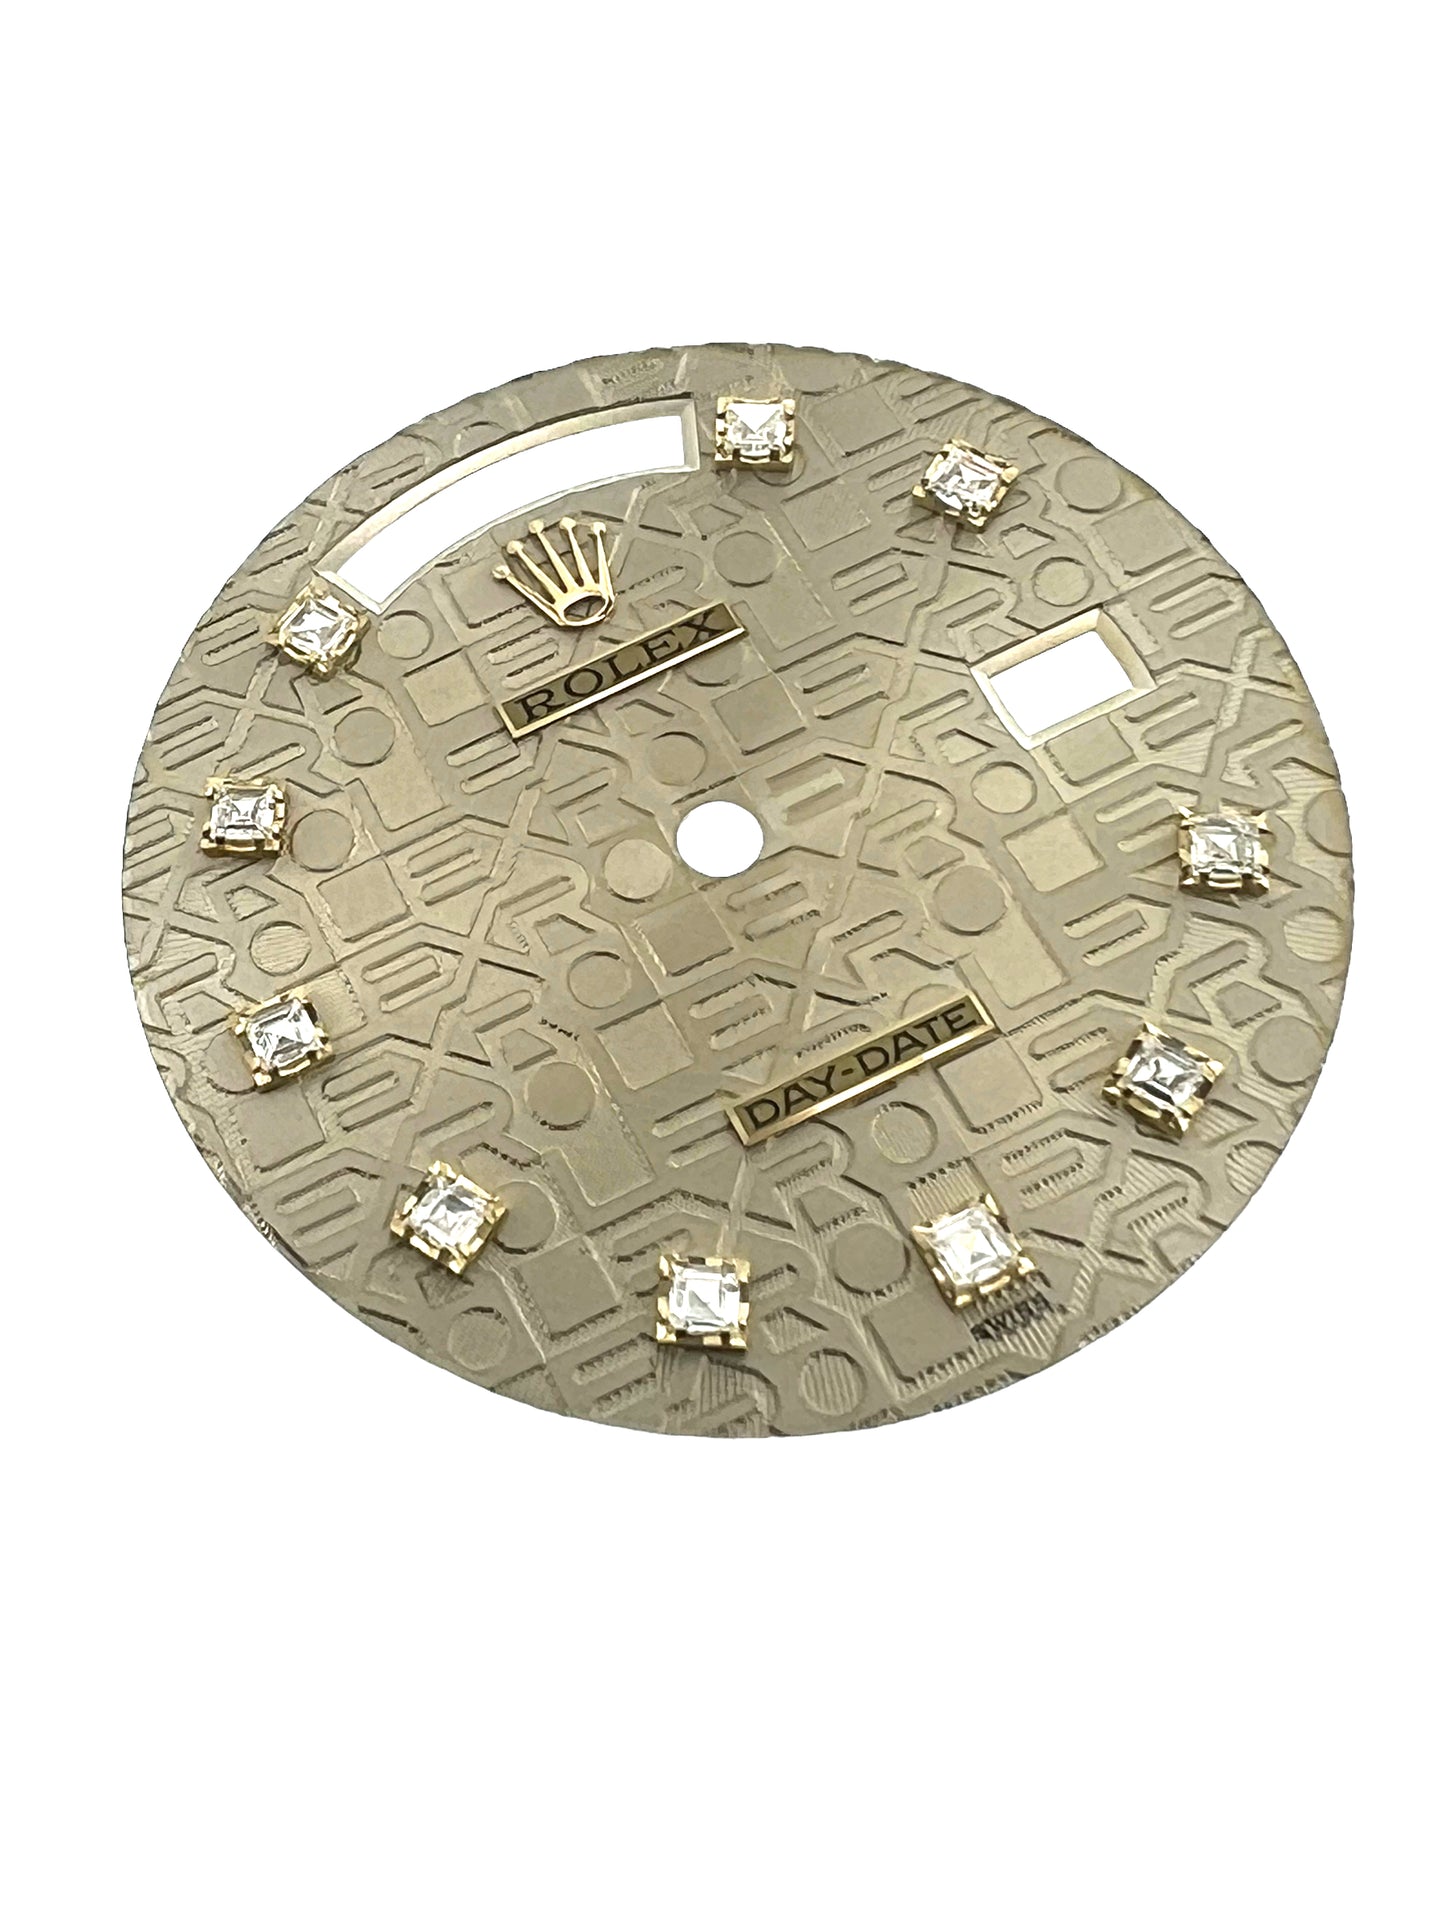 Rolex New Day-Date dial cadran Zifferblatt 18238 set with diamonds